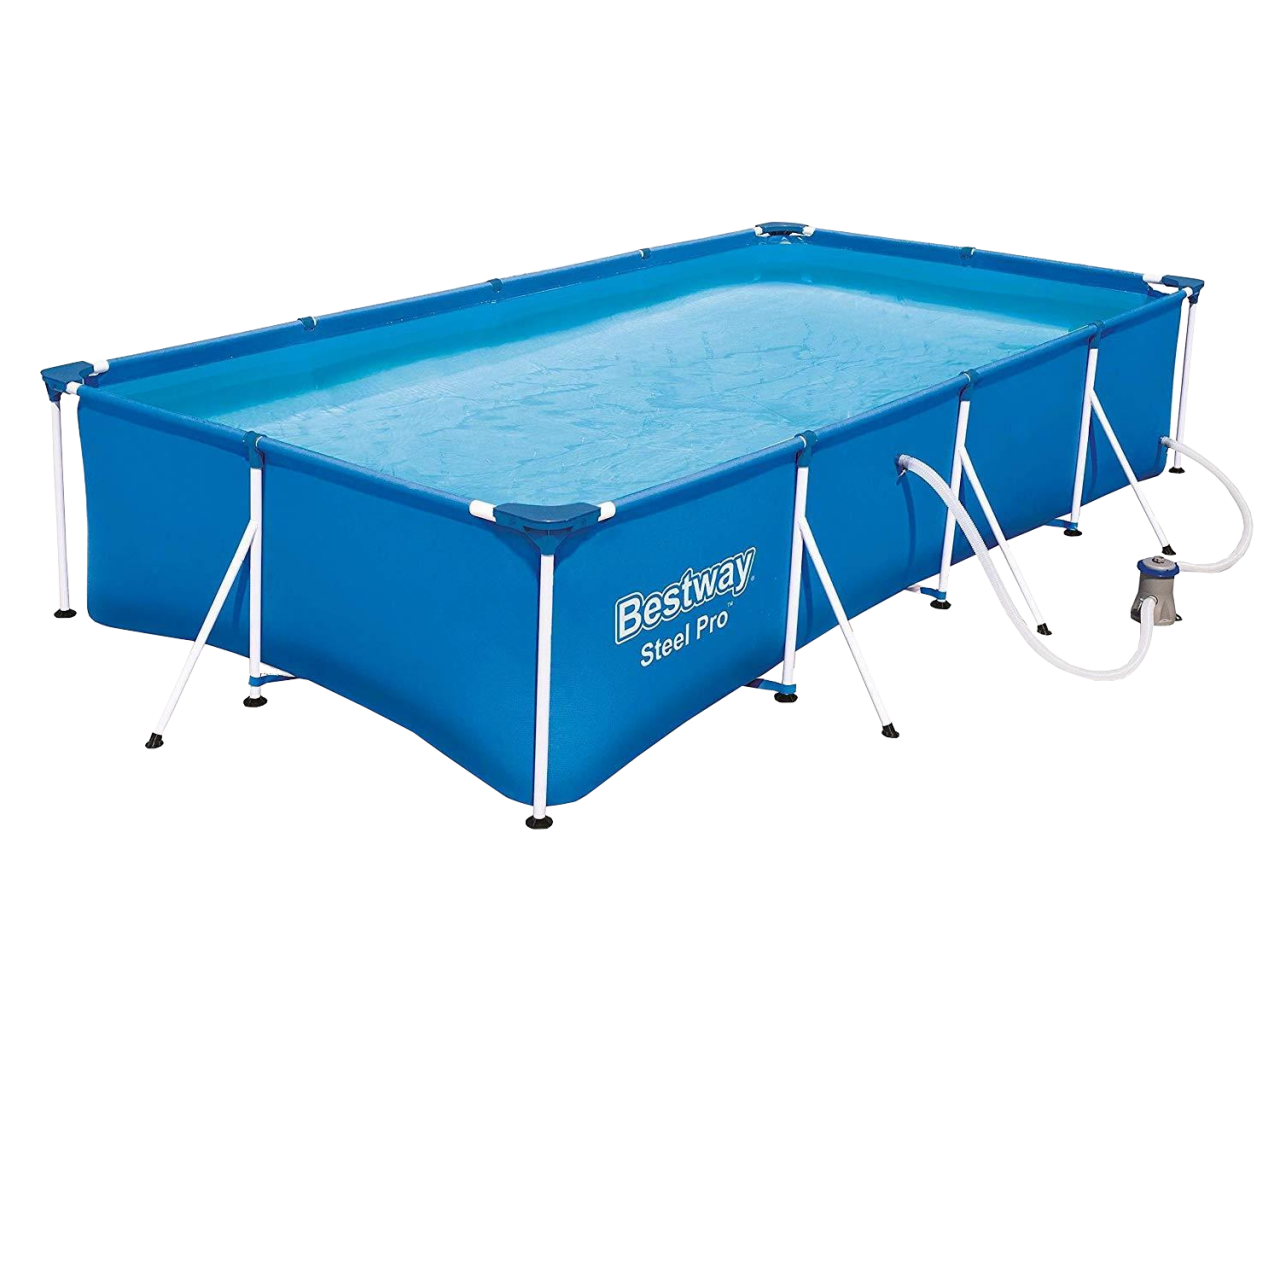 Bestway 56424 Frame Pool Steel Pro mit Filterpumpe Schwimmbecken 400x211x81cm